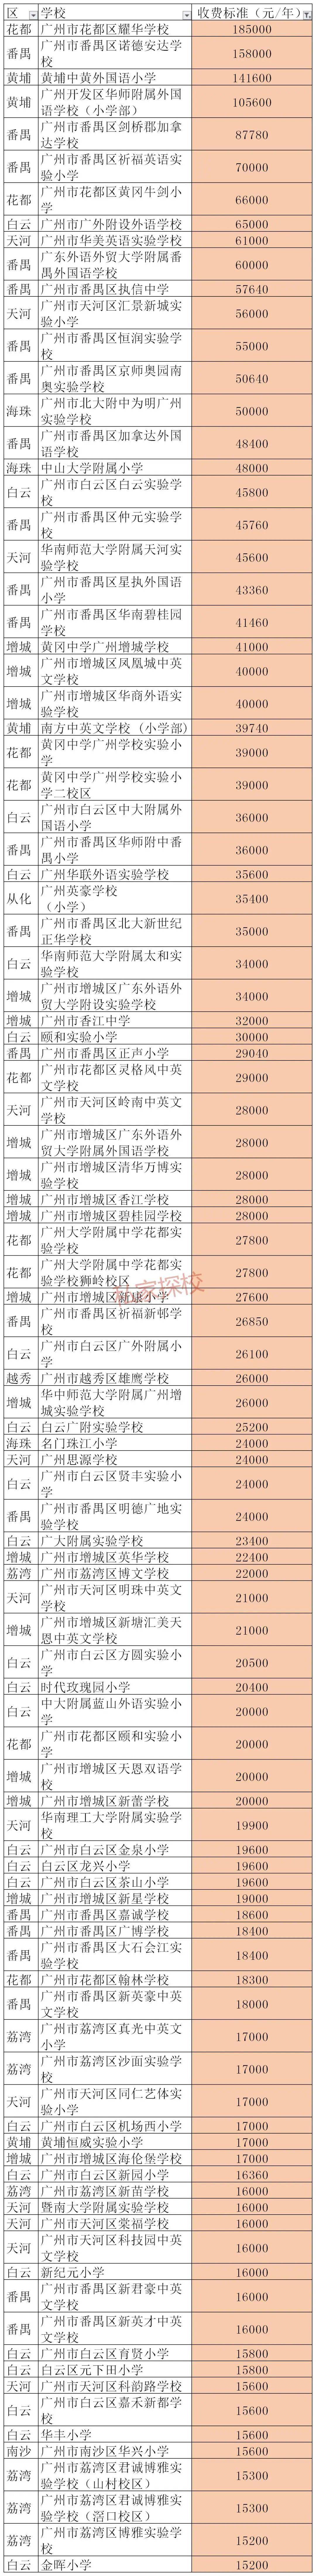 广州小学排行榜_「2021幼升小」广州最佳公办小学排行榜